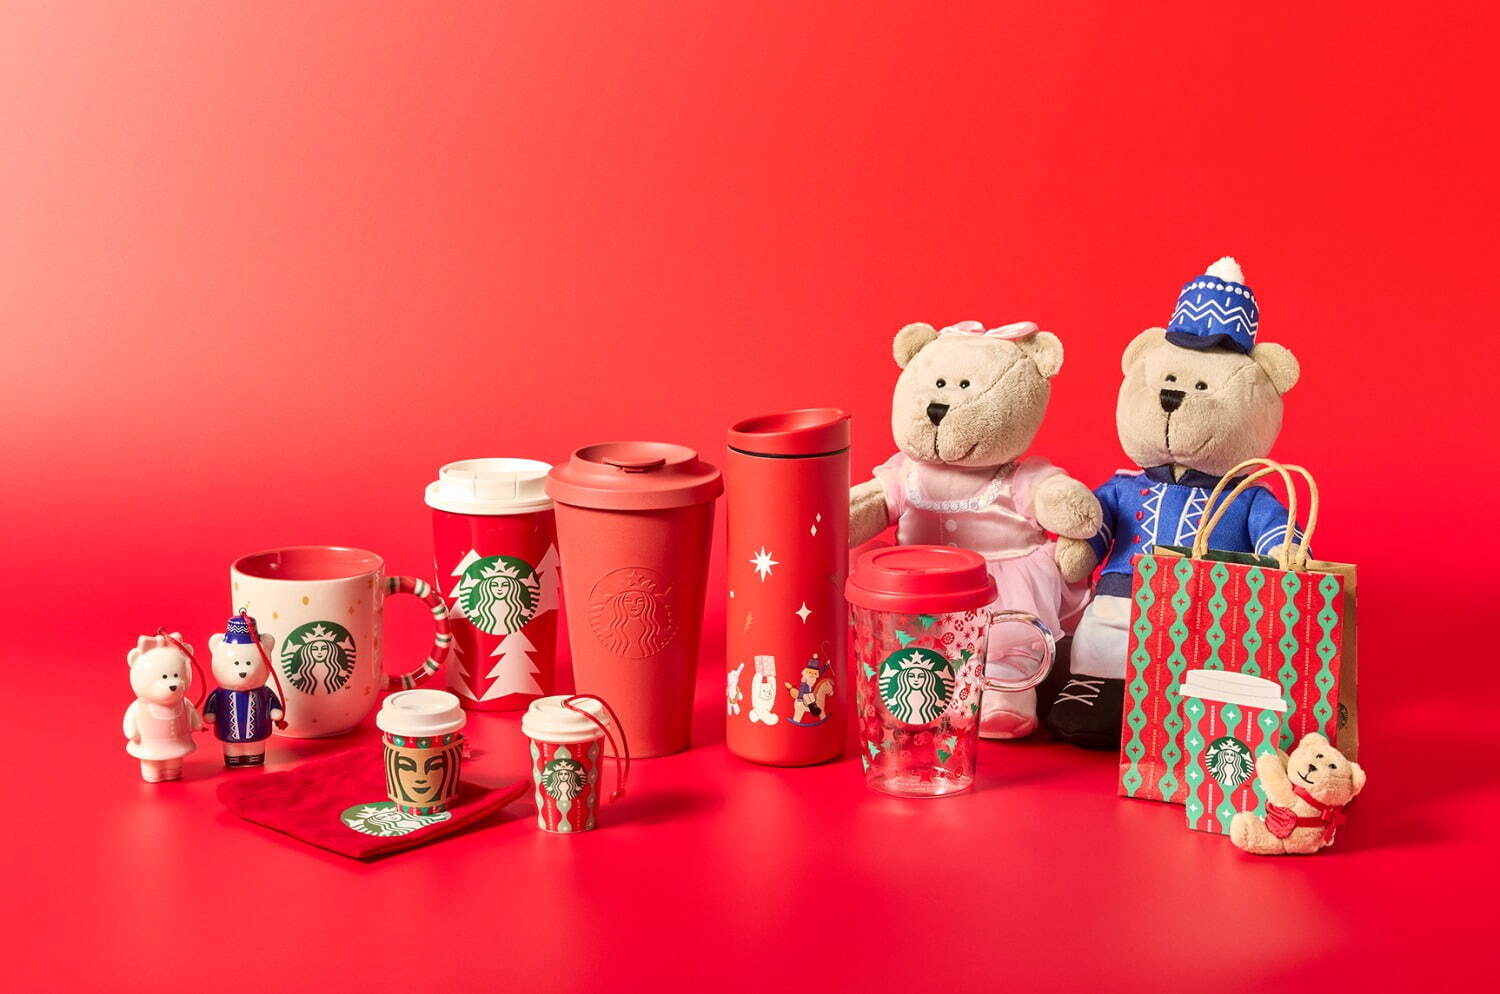 https://sugoimart.com/cdn/shop/articles/Starbucks-Japan-Christmas.jpg?v=1667388255&width=1500